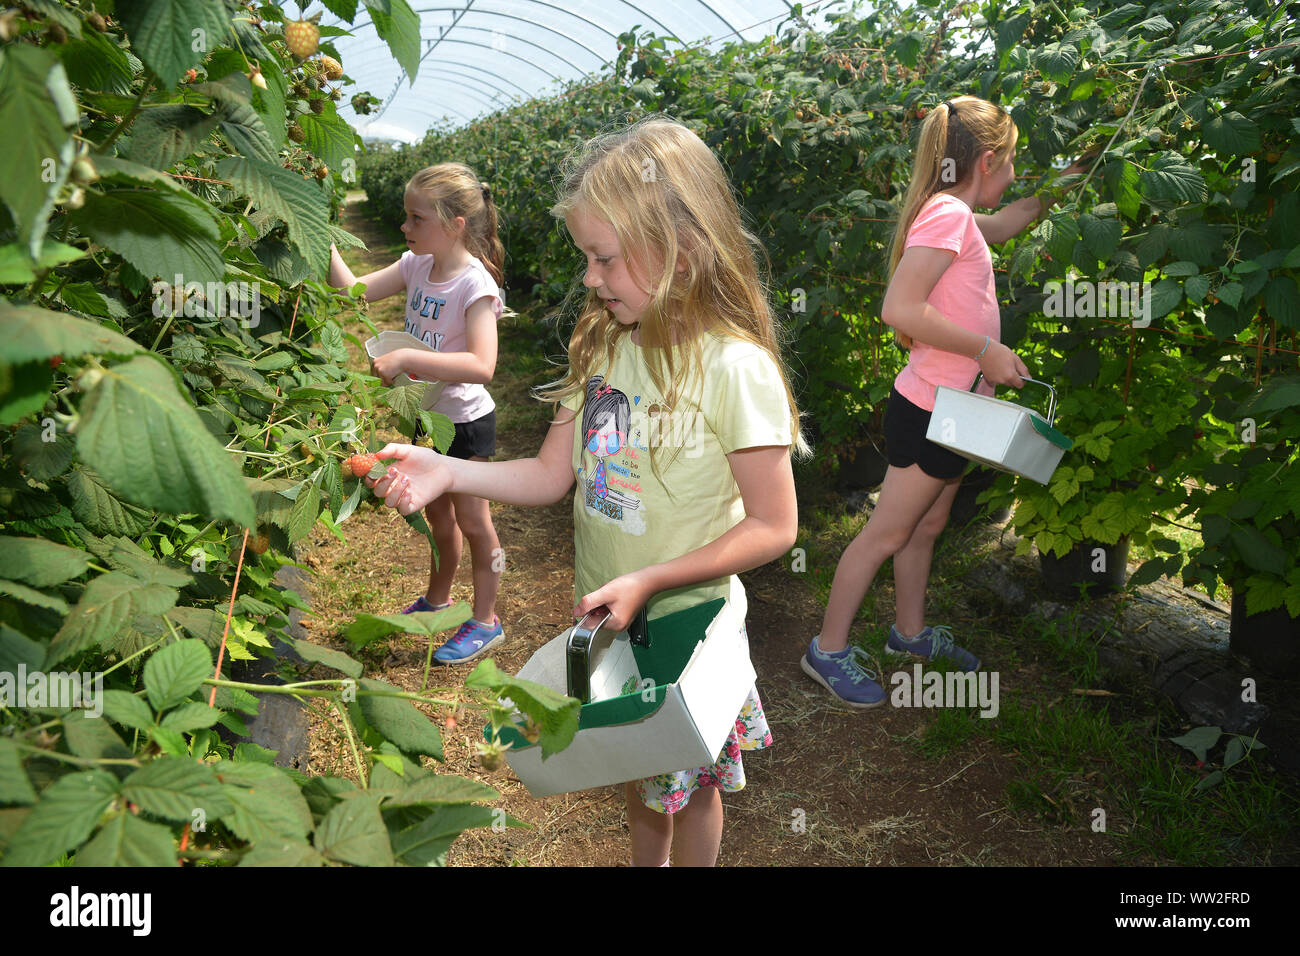 Les jeunes filles choisir framboises et autres fruits au cours d'une visite à une ferme fruitière près d'Édimbourg, Écosse Banque D'Images